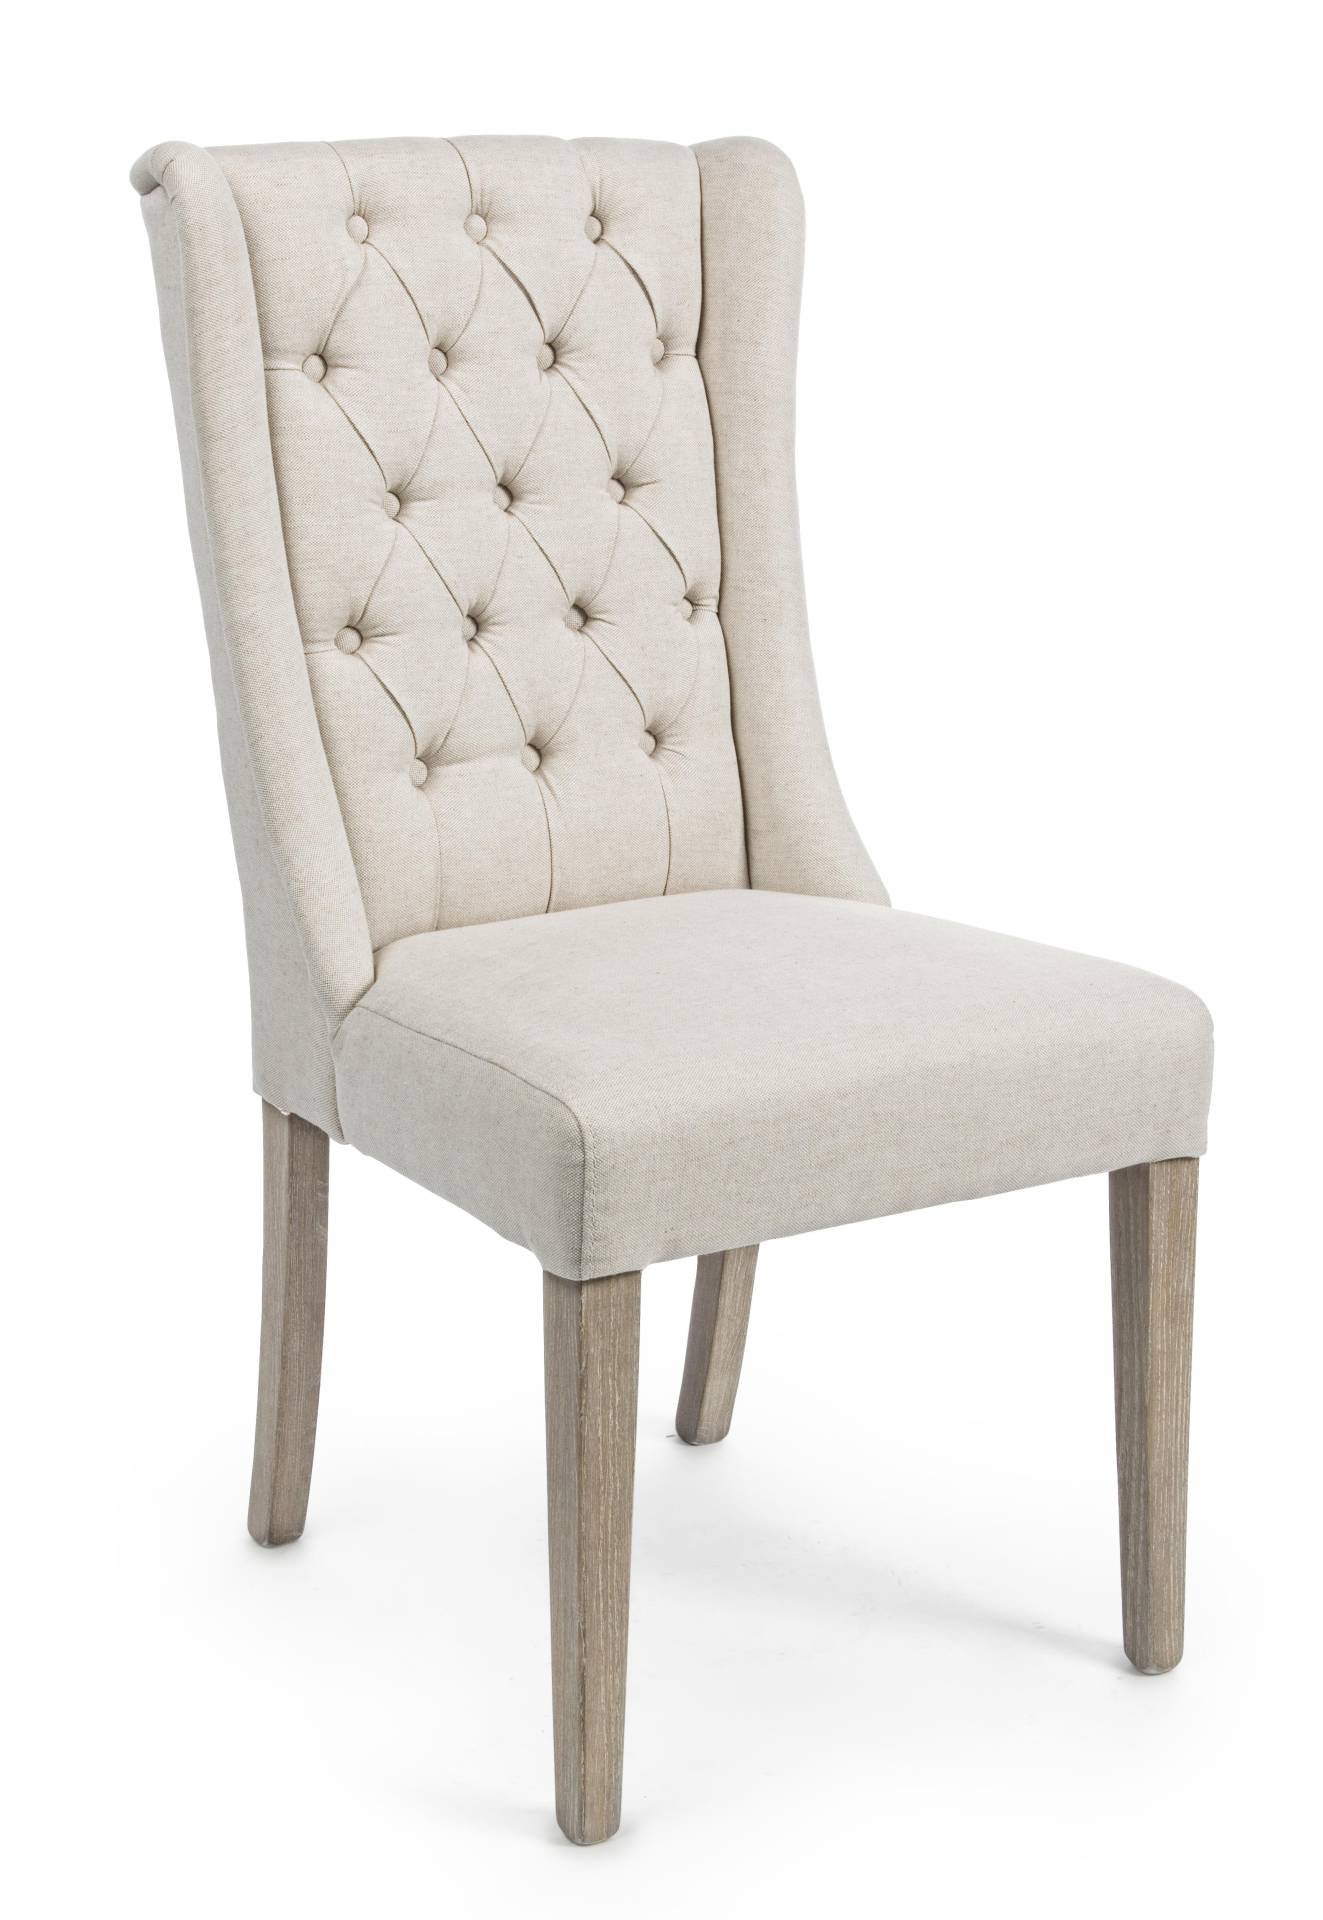 Der Esszimmerstuhl Columbia überzeugt mit seinem klassischen Design. Gefertigt wurde der Stuhl aus Eichenholz, welches einen natürlichen Farbton besitzt. Der Bezug ist aus einem Mix aus Baumwolle und leinen und hat eine Beige Farbe. Die Sitzhöhe beträgt 4